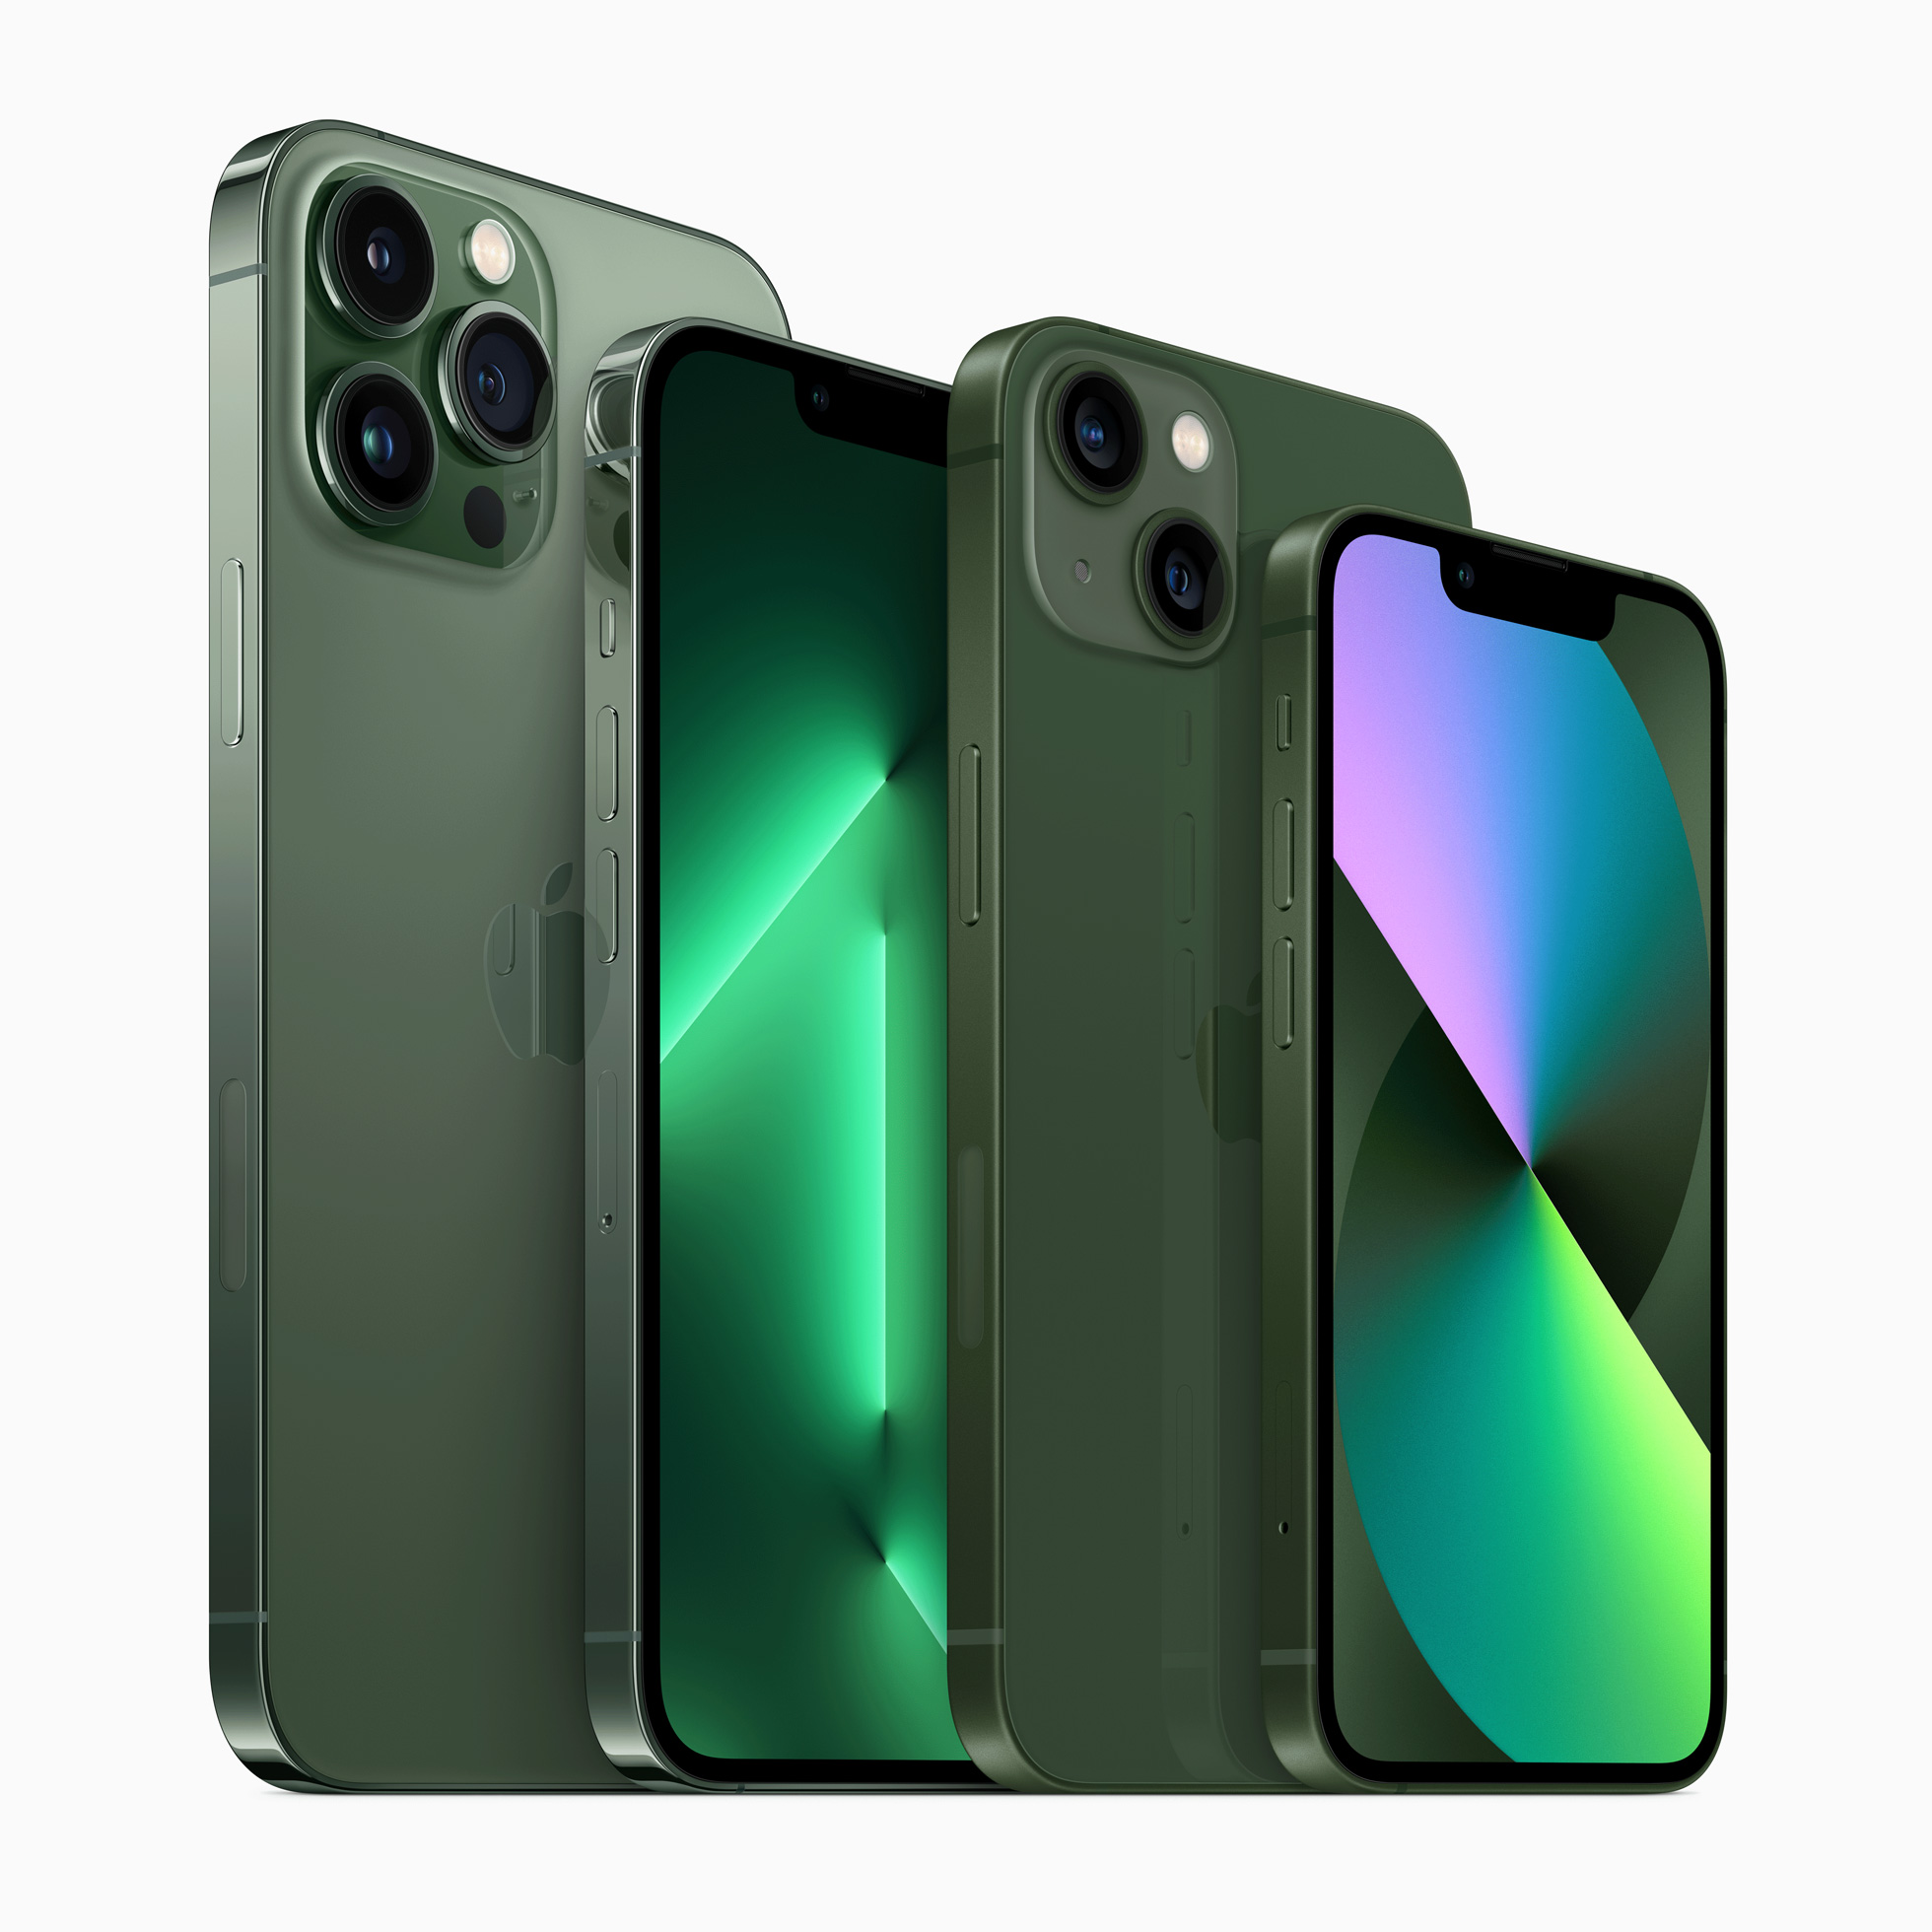 สีใหม่ iPhone 13 Pro สีเขียวอัลไพน์ และ iPhone 13 สีเขียว